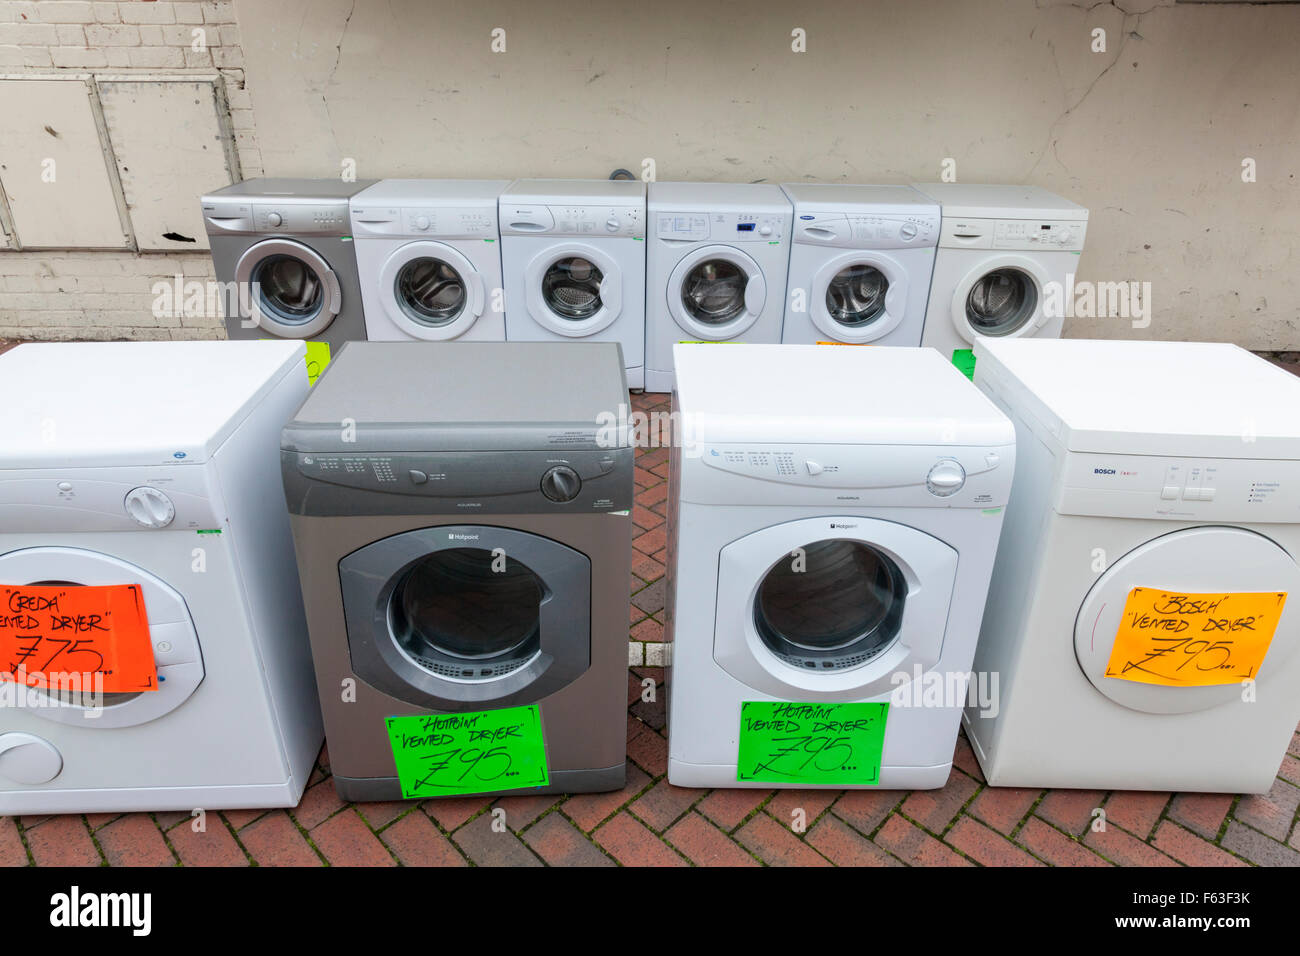 Zweite Hand weiße Ware. Alte und gebrauchte Waschmaschine und  Wäschetrockner Verkauf auf einer britischen Stadt Centre Street.  Nottinghamshire, England, Großbritannien Stockfotografie - Alamy